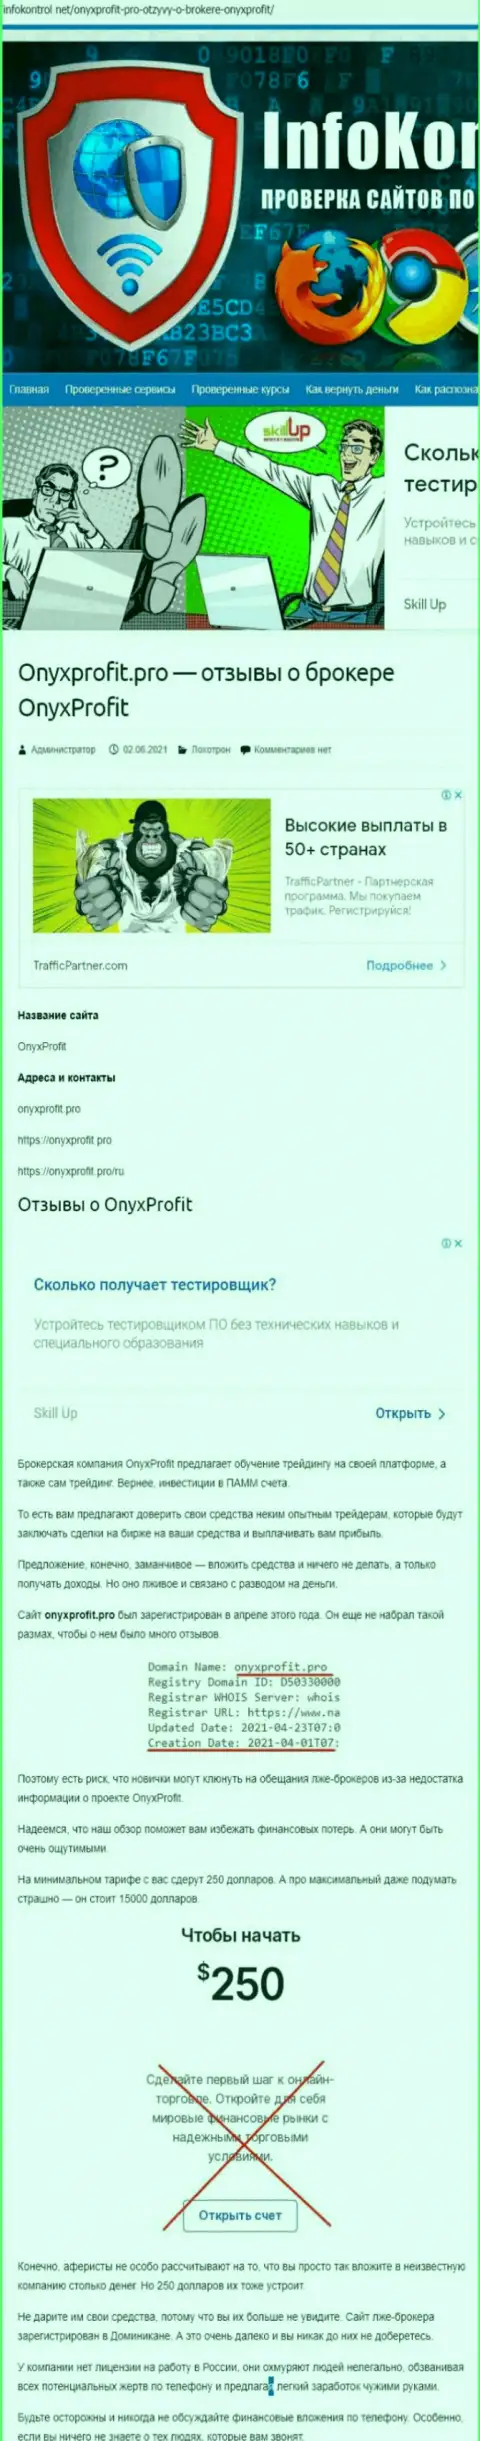 Onyx Profit - это очередной обман, вестись на который не стоит (обзор проделок организации)